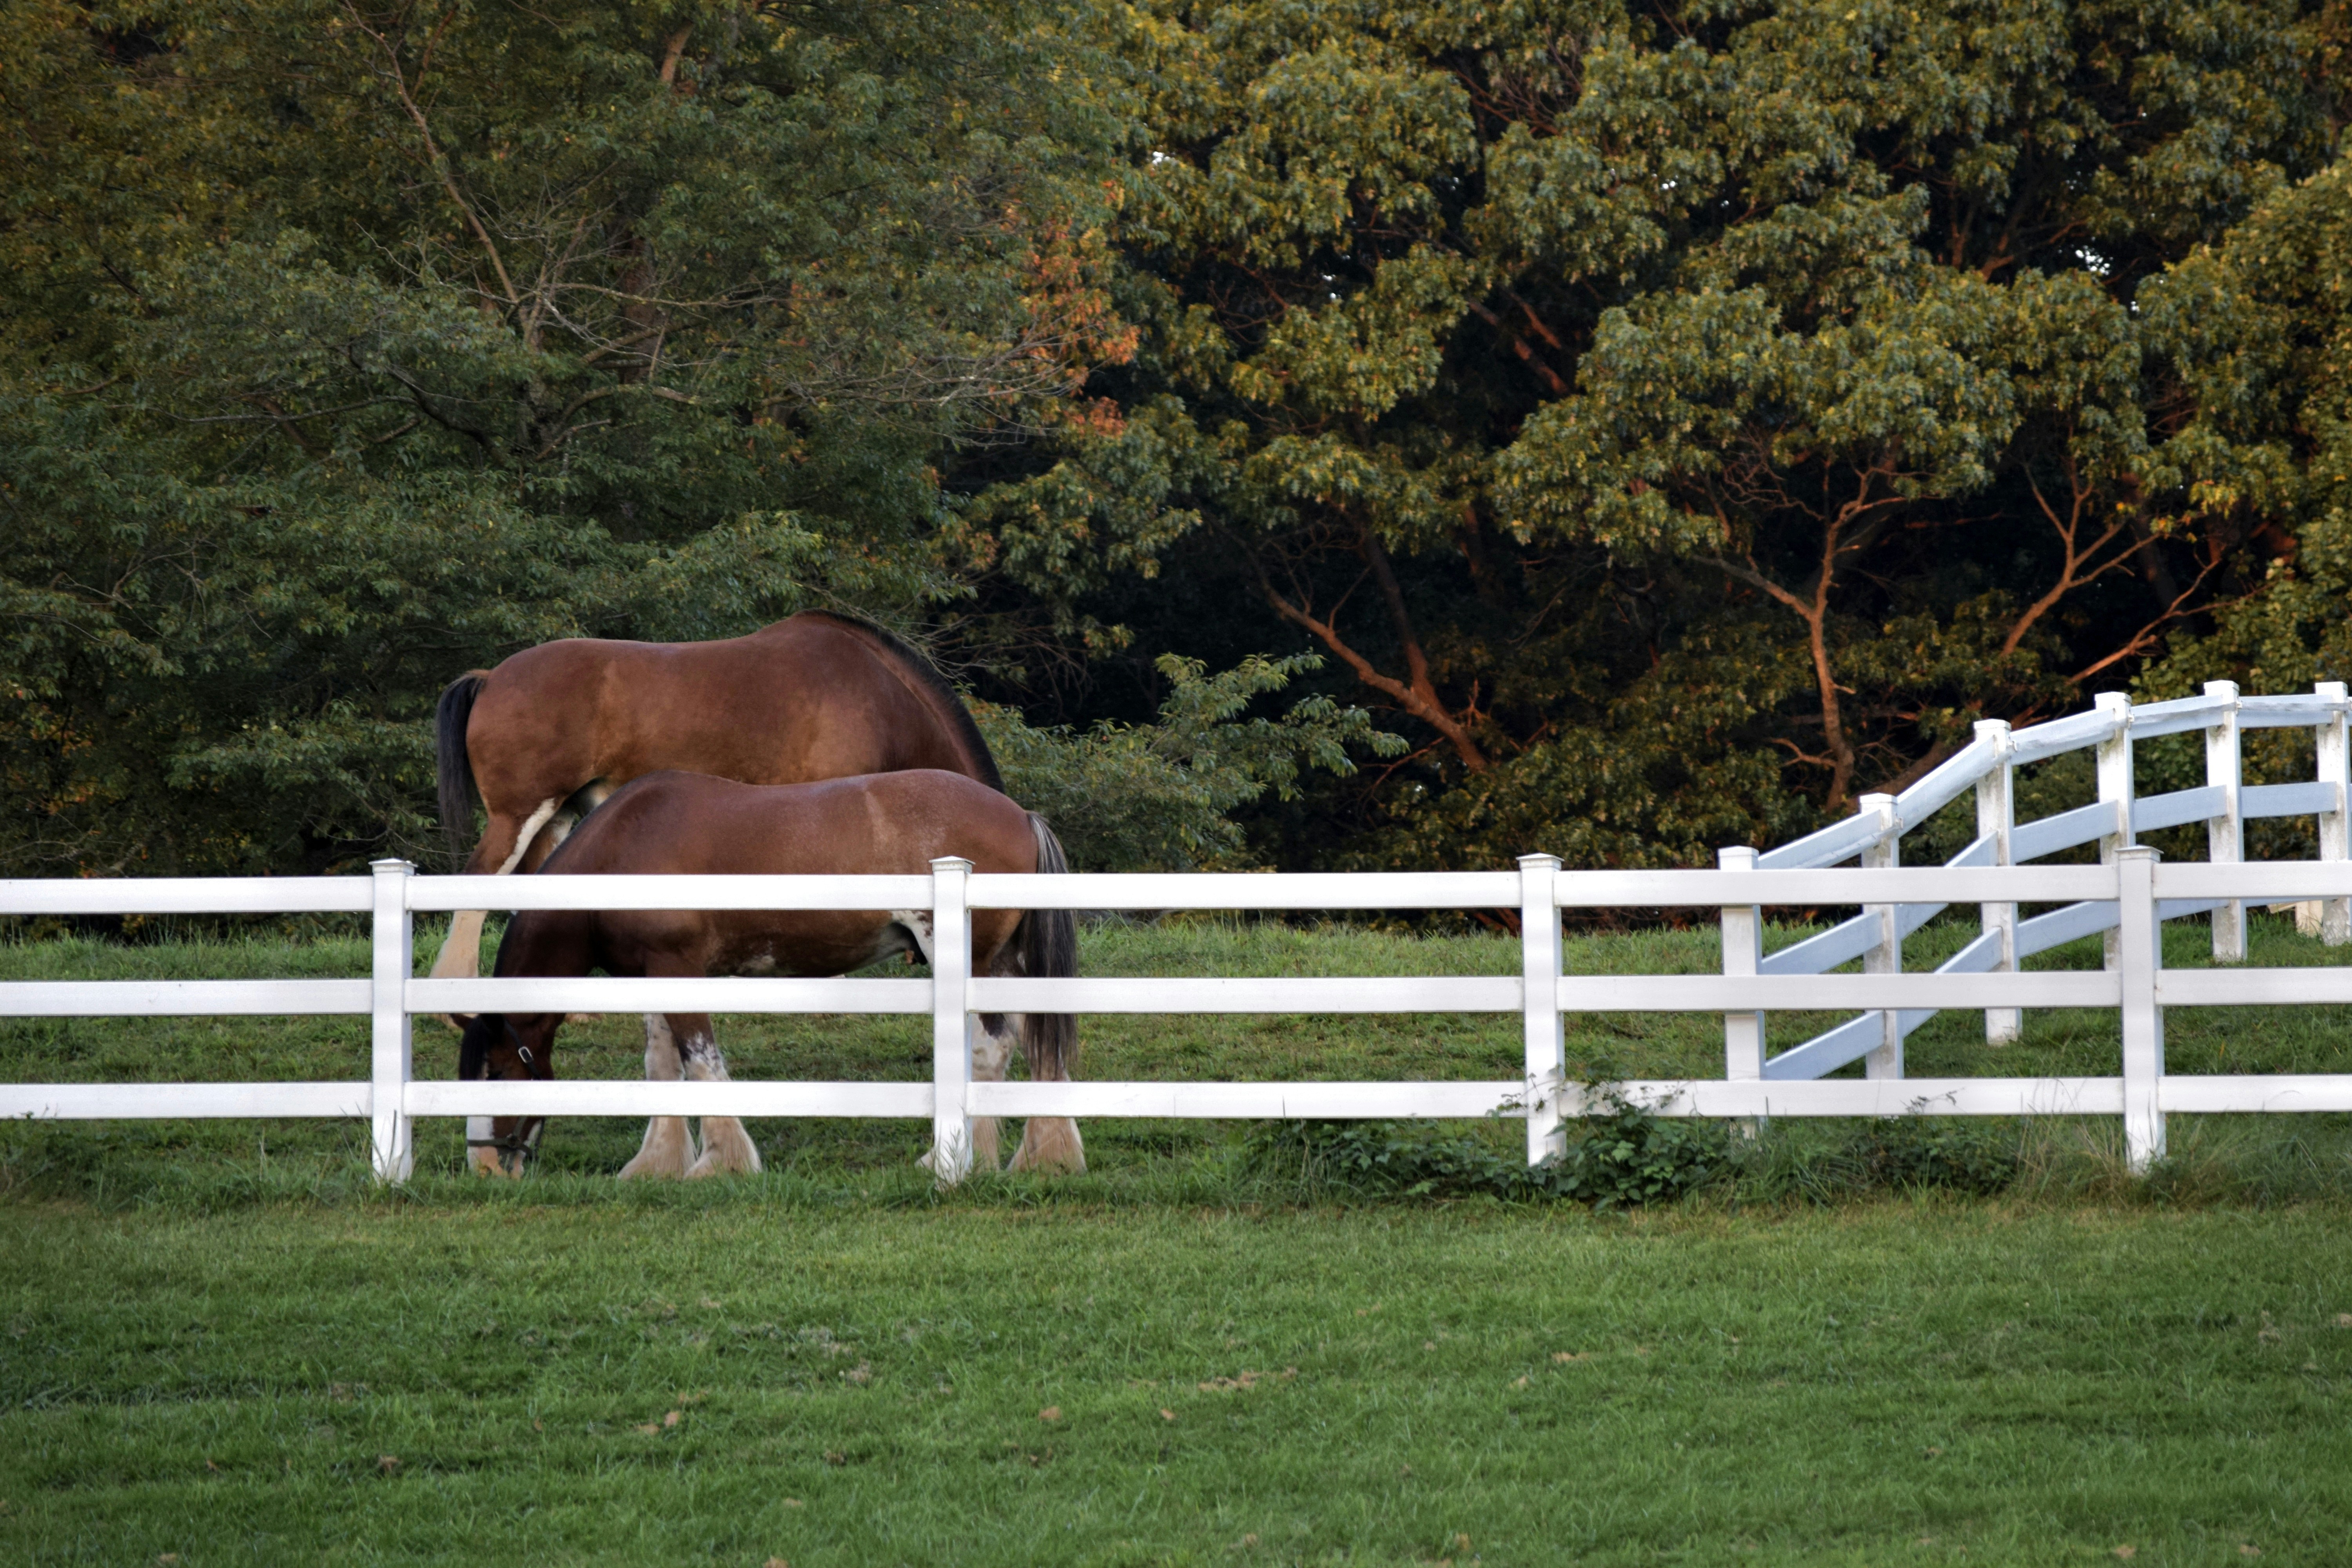 Horses grazing. Shot from Carousel park in Delaware.